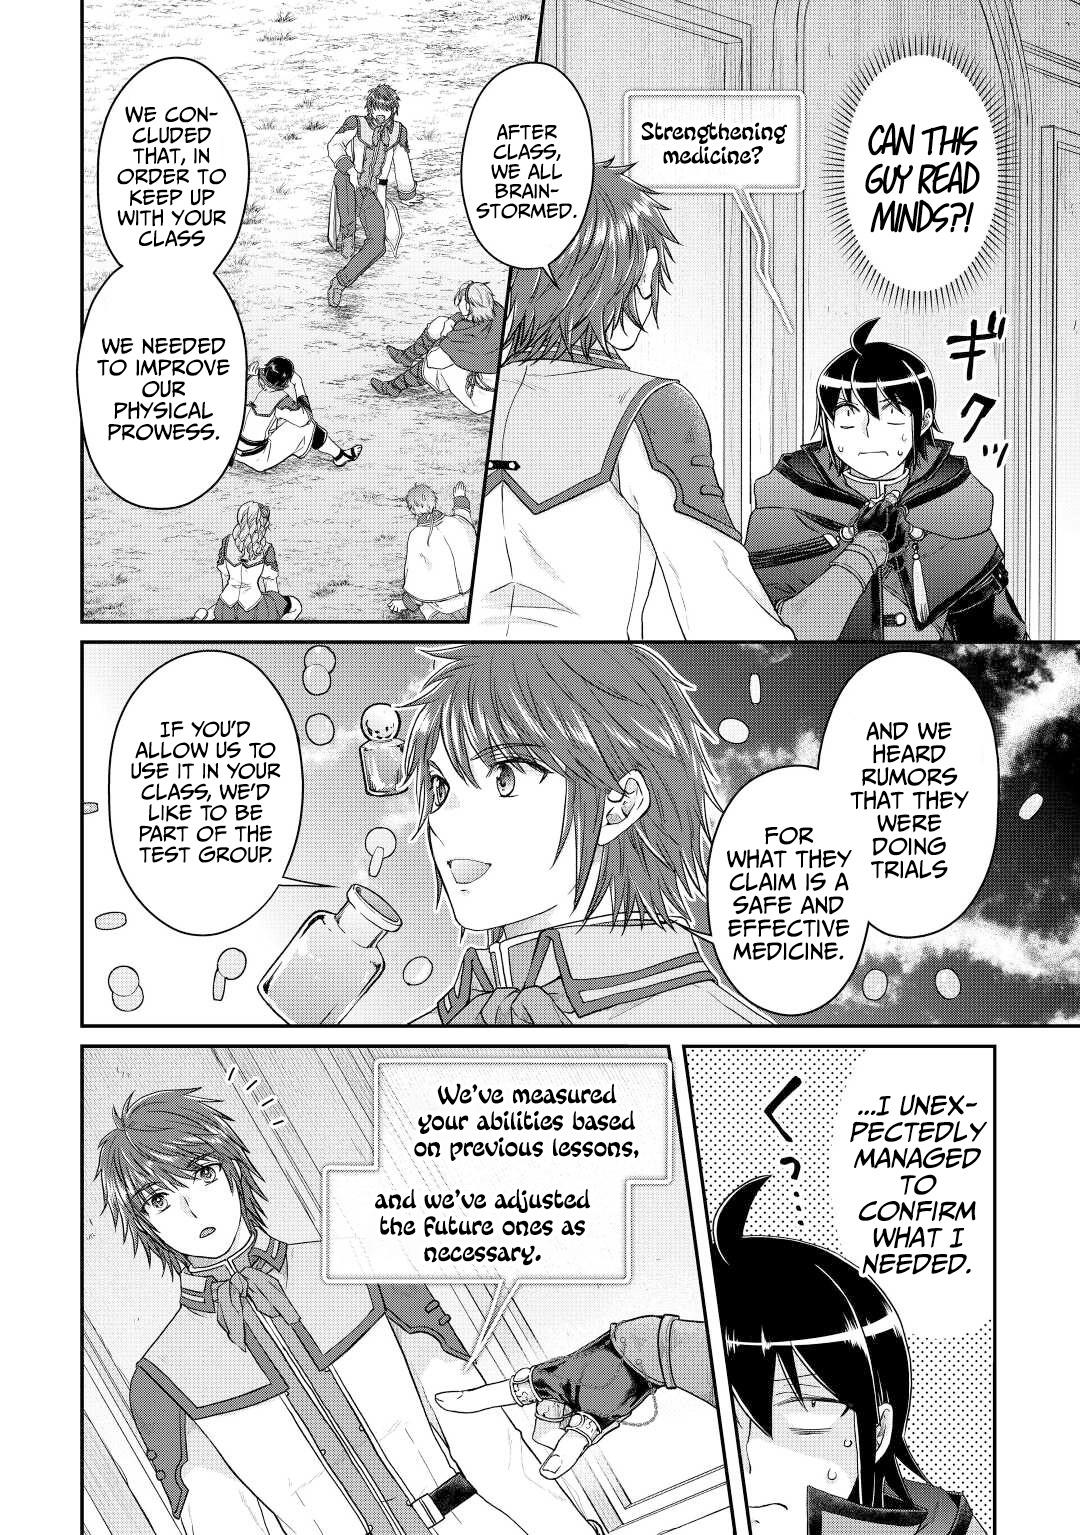 Read Tsuki Ga Michibiku Isekai Douchuu Chapter 88: [%'*g0] on Mangakakalot